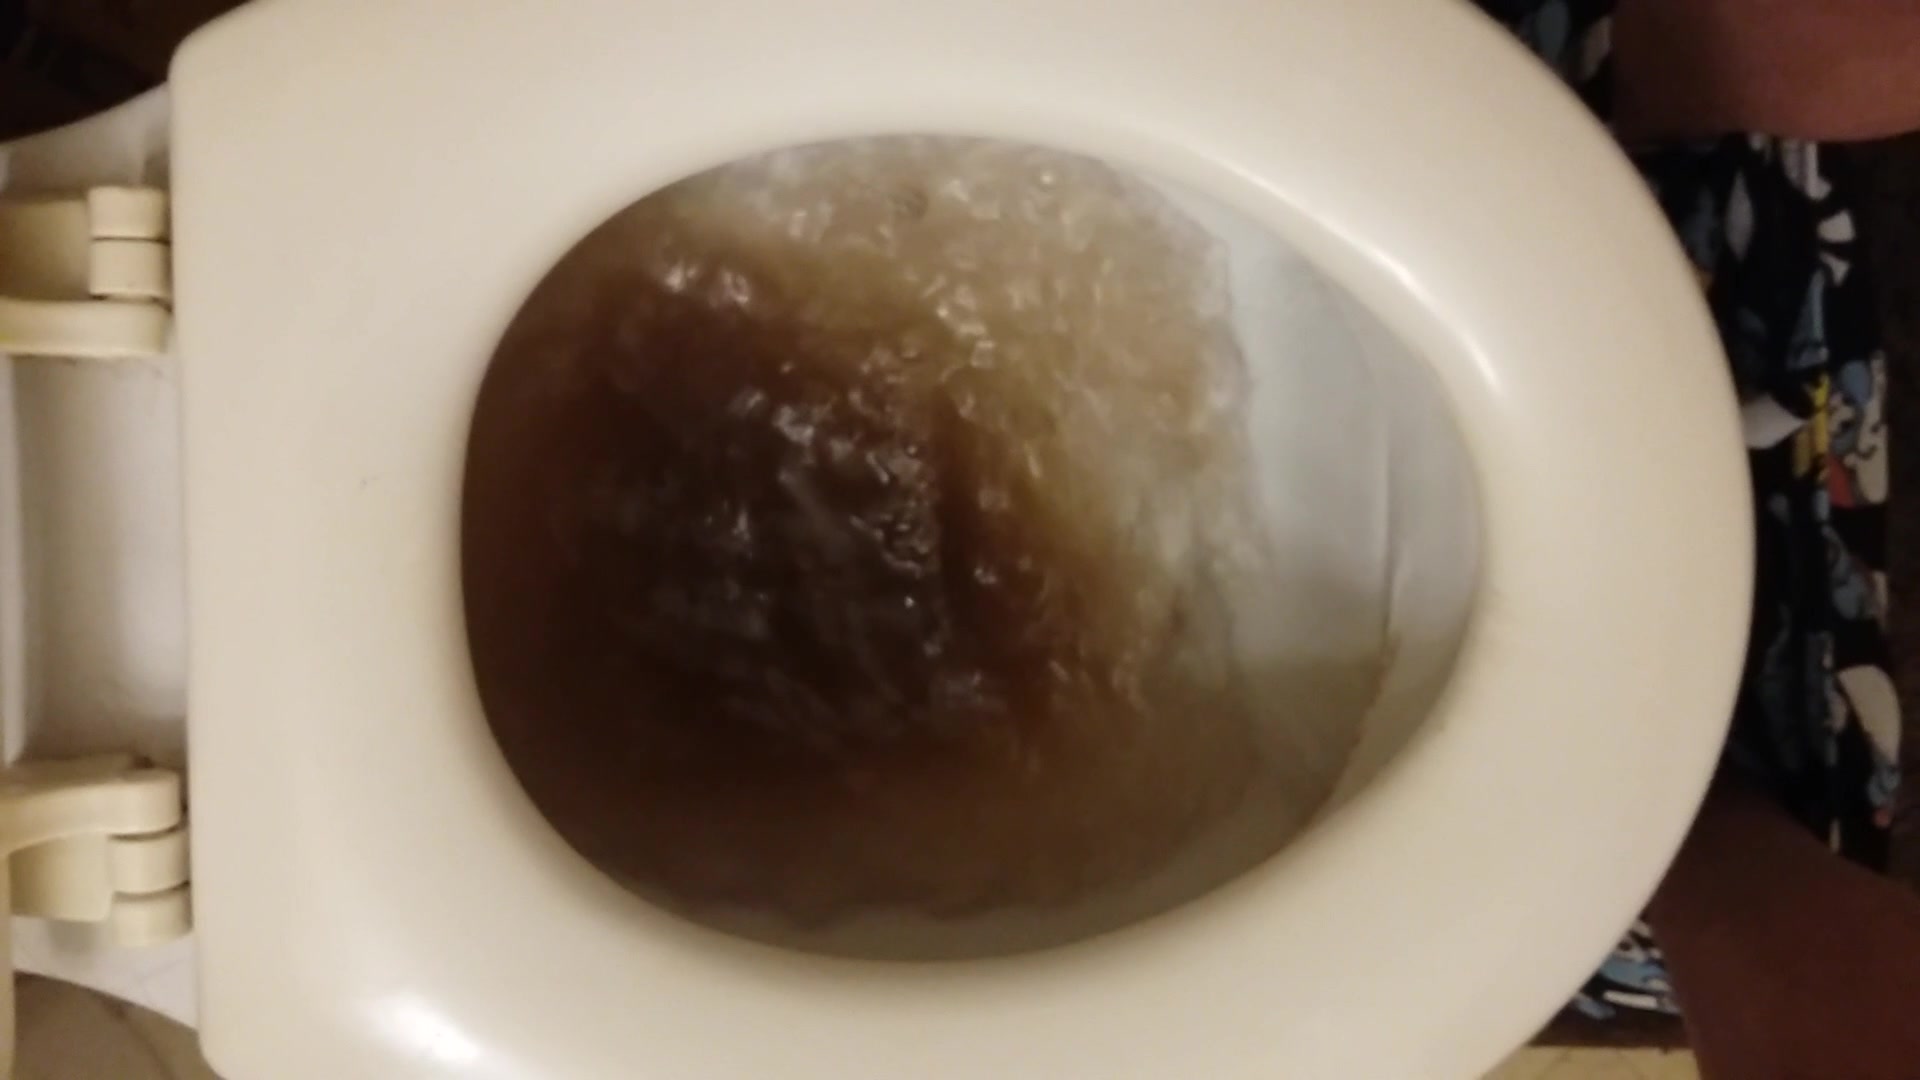 Diarrhea in the toilet